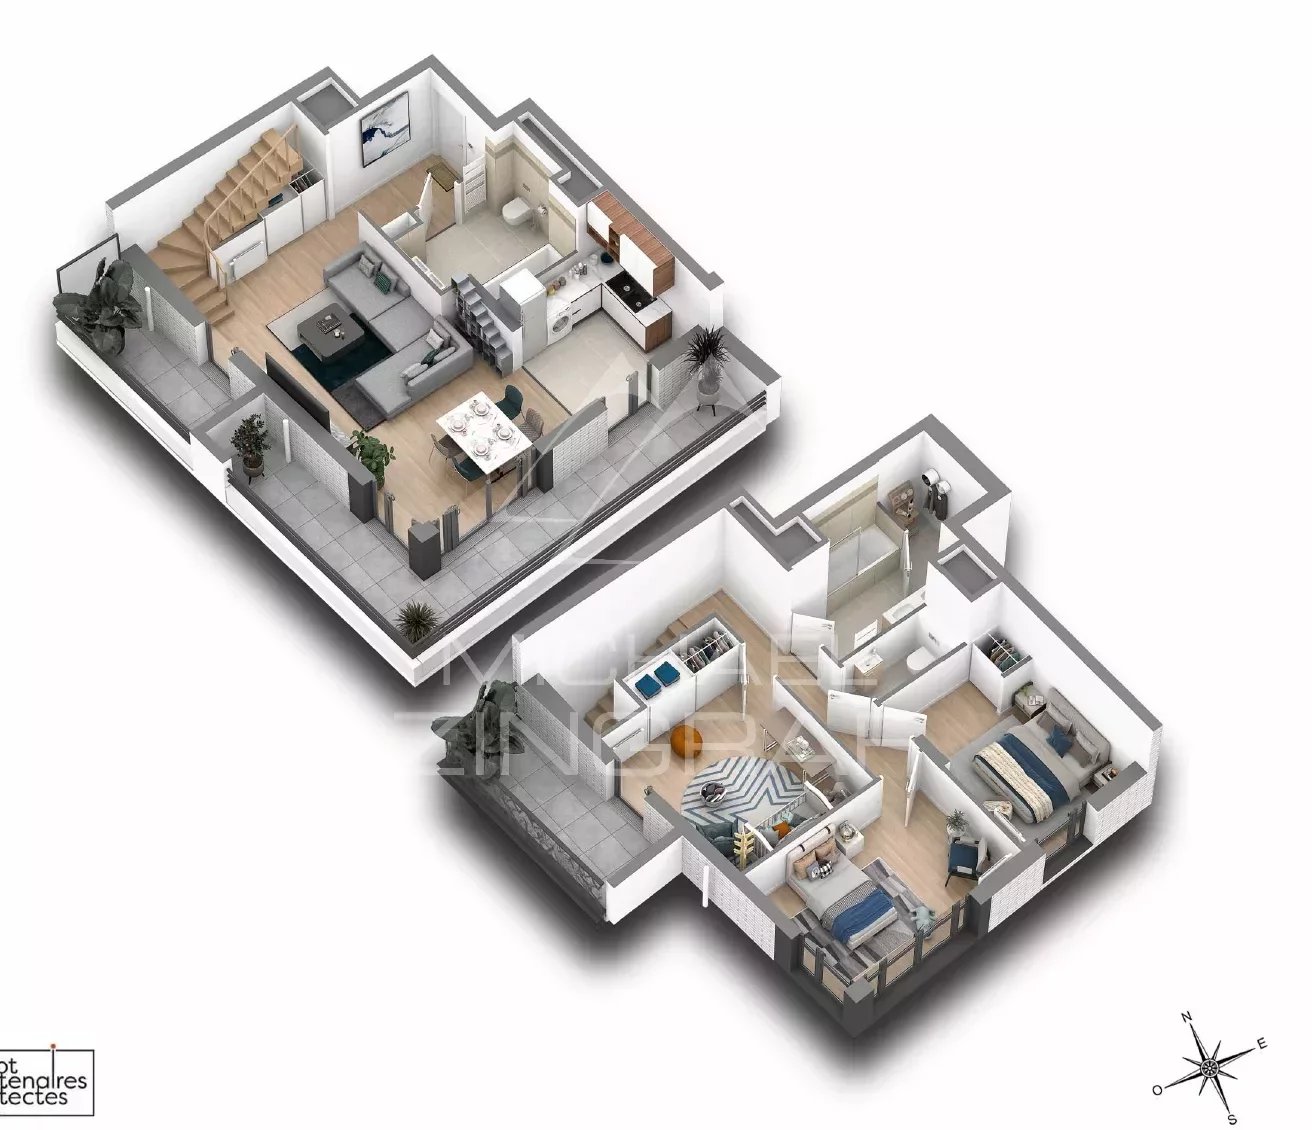 For Sale - New Development - 3-Bedroom Duplex - Suresnes (92)